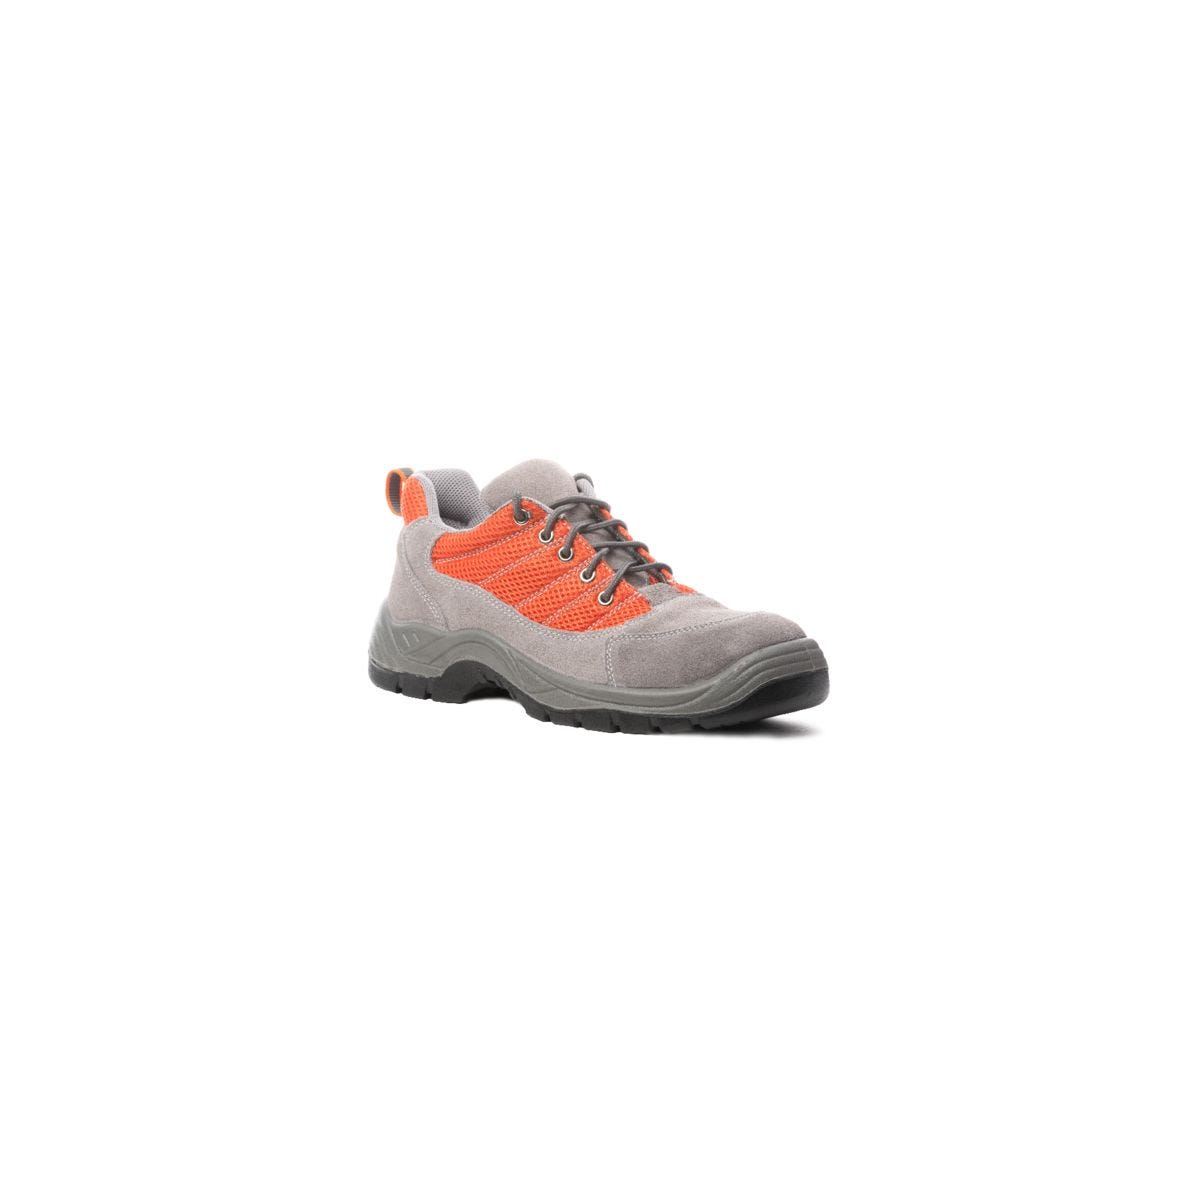 Chaussures de sécurité SPINELLE S1P basse orange - COVERGUARD - Taille 46 0